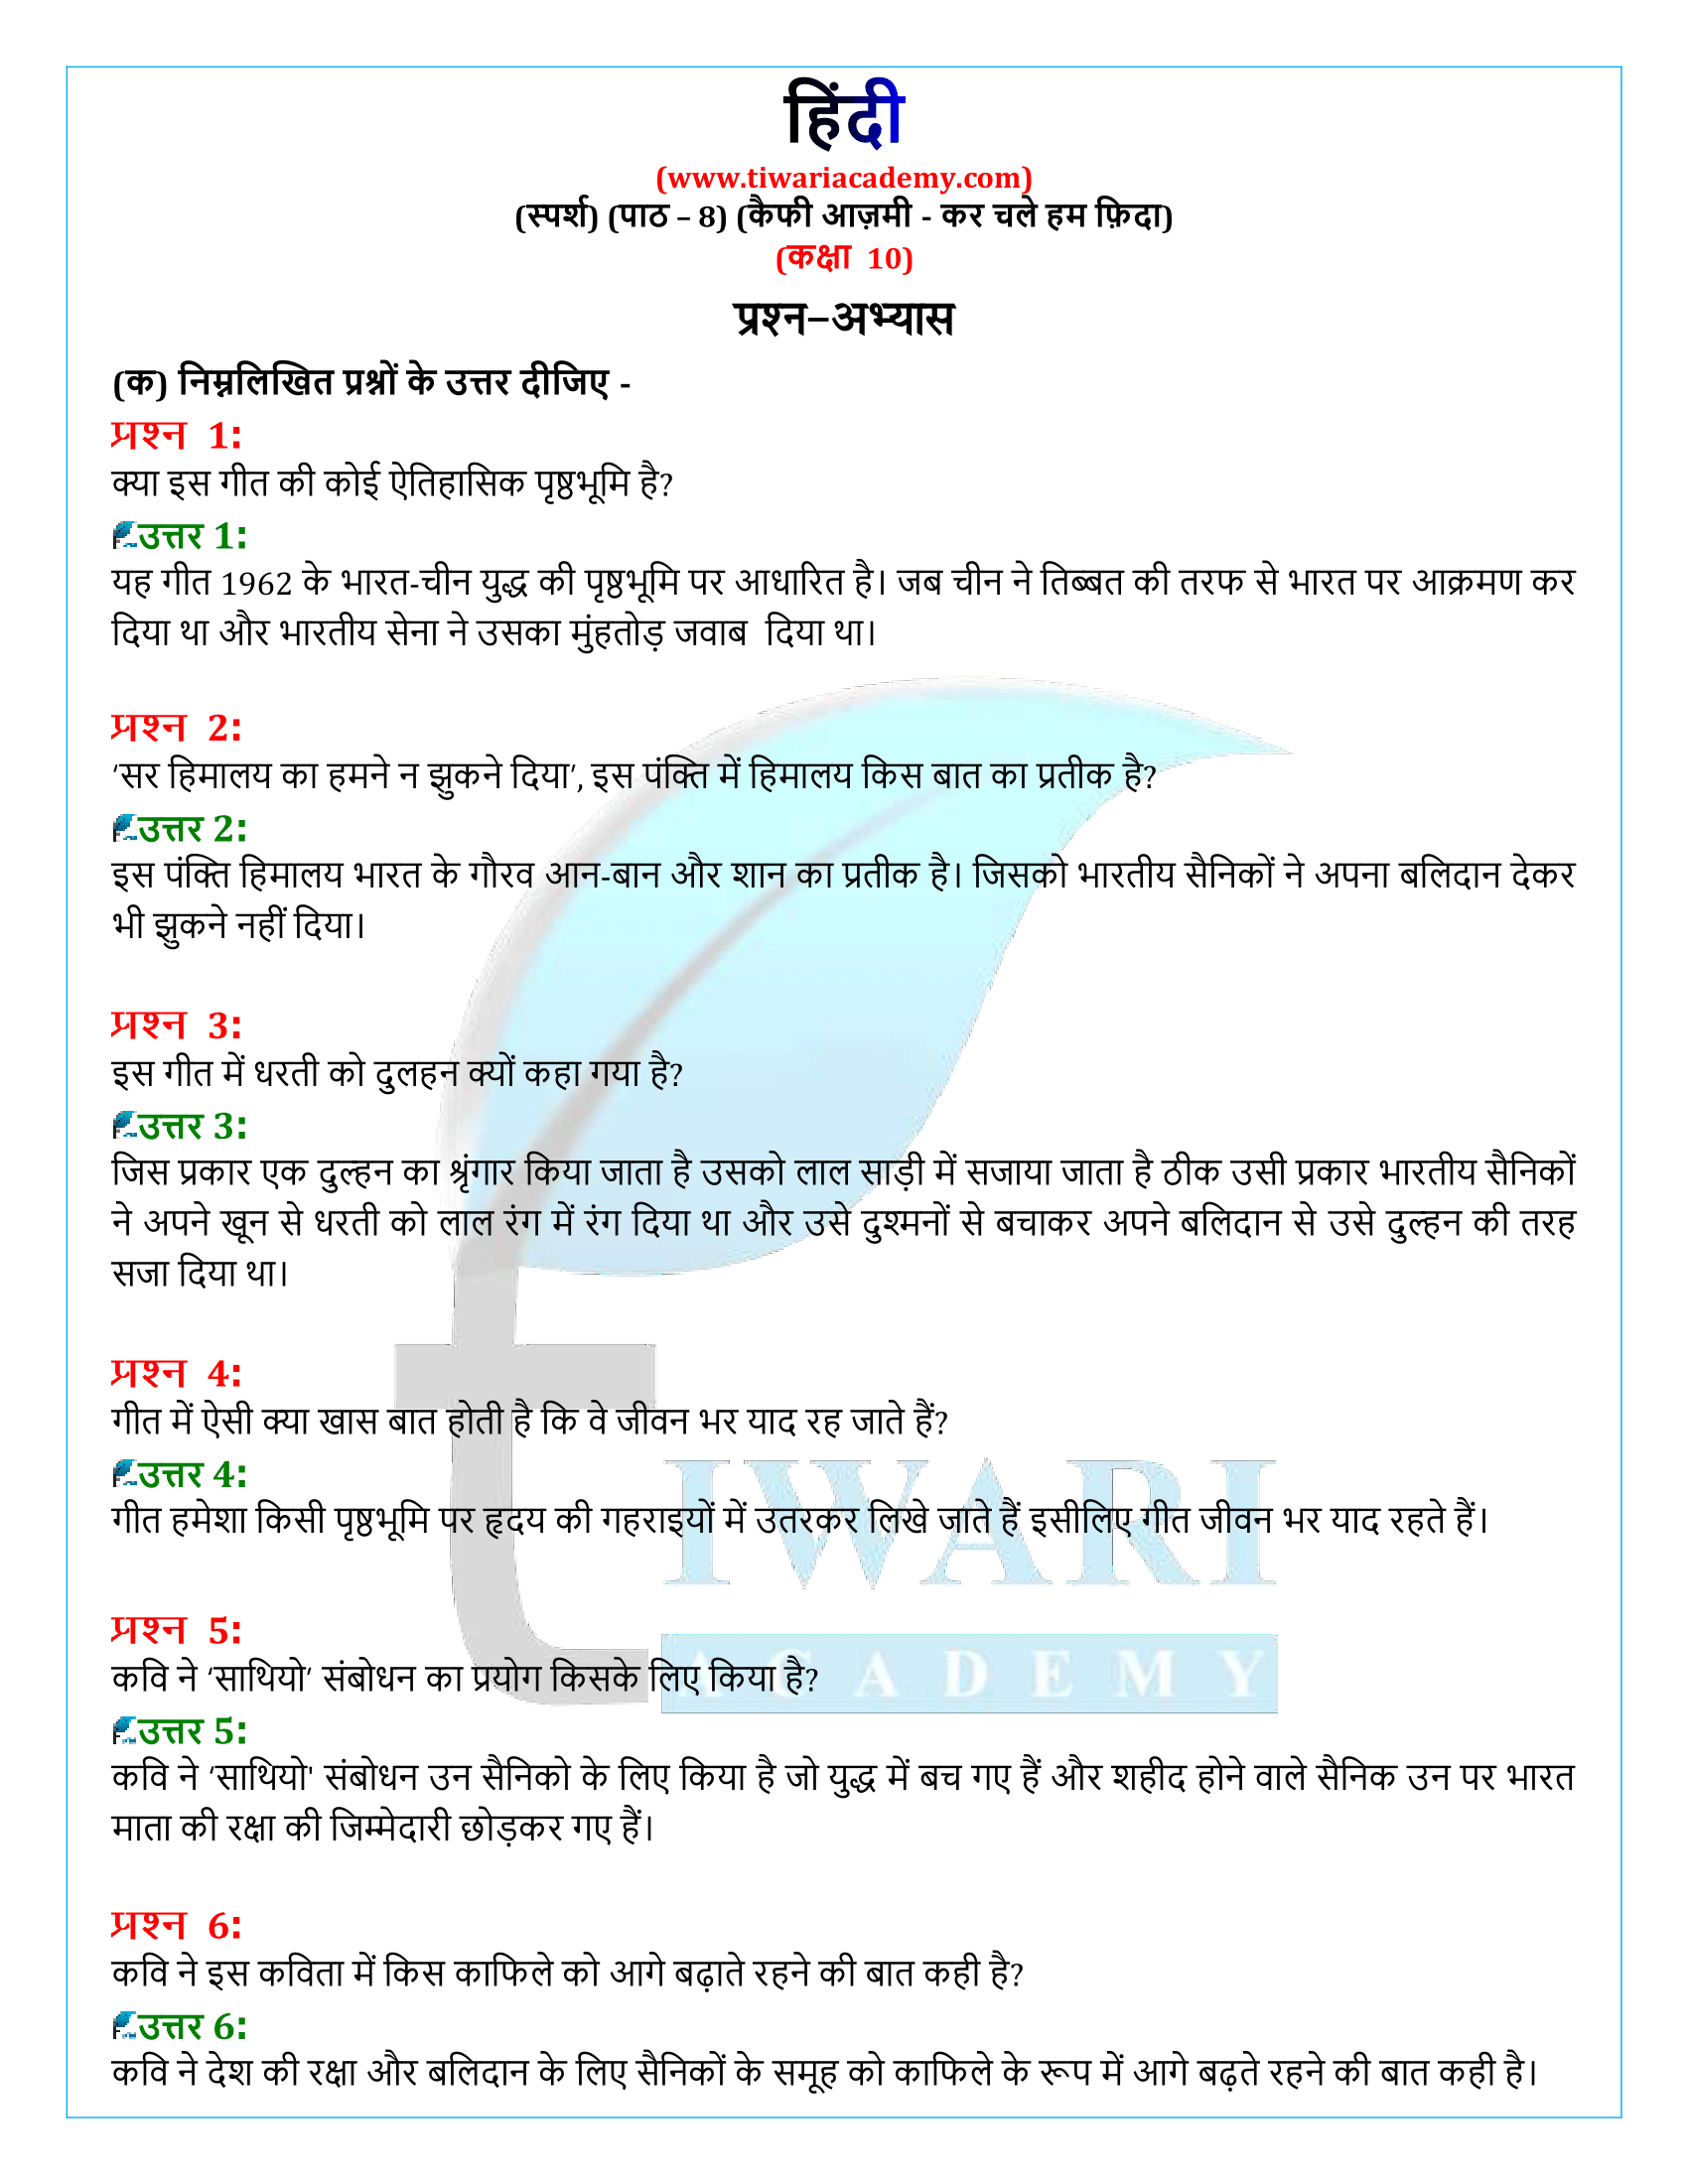 कक्षा 10 हिंदी स्पर्श अध्याय 8 के प्रश्न उत्तर